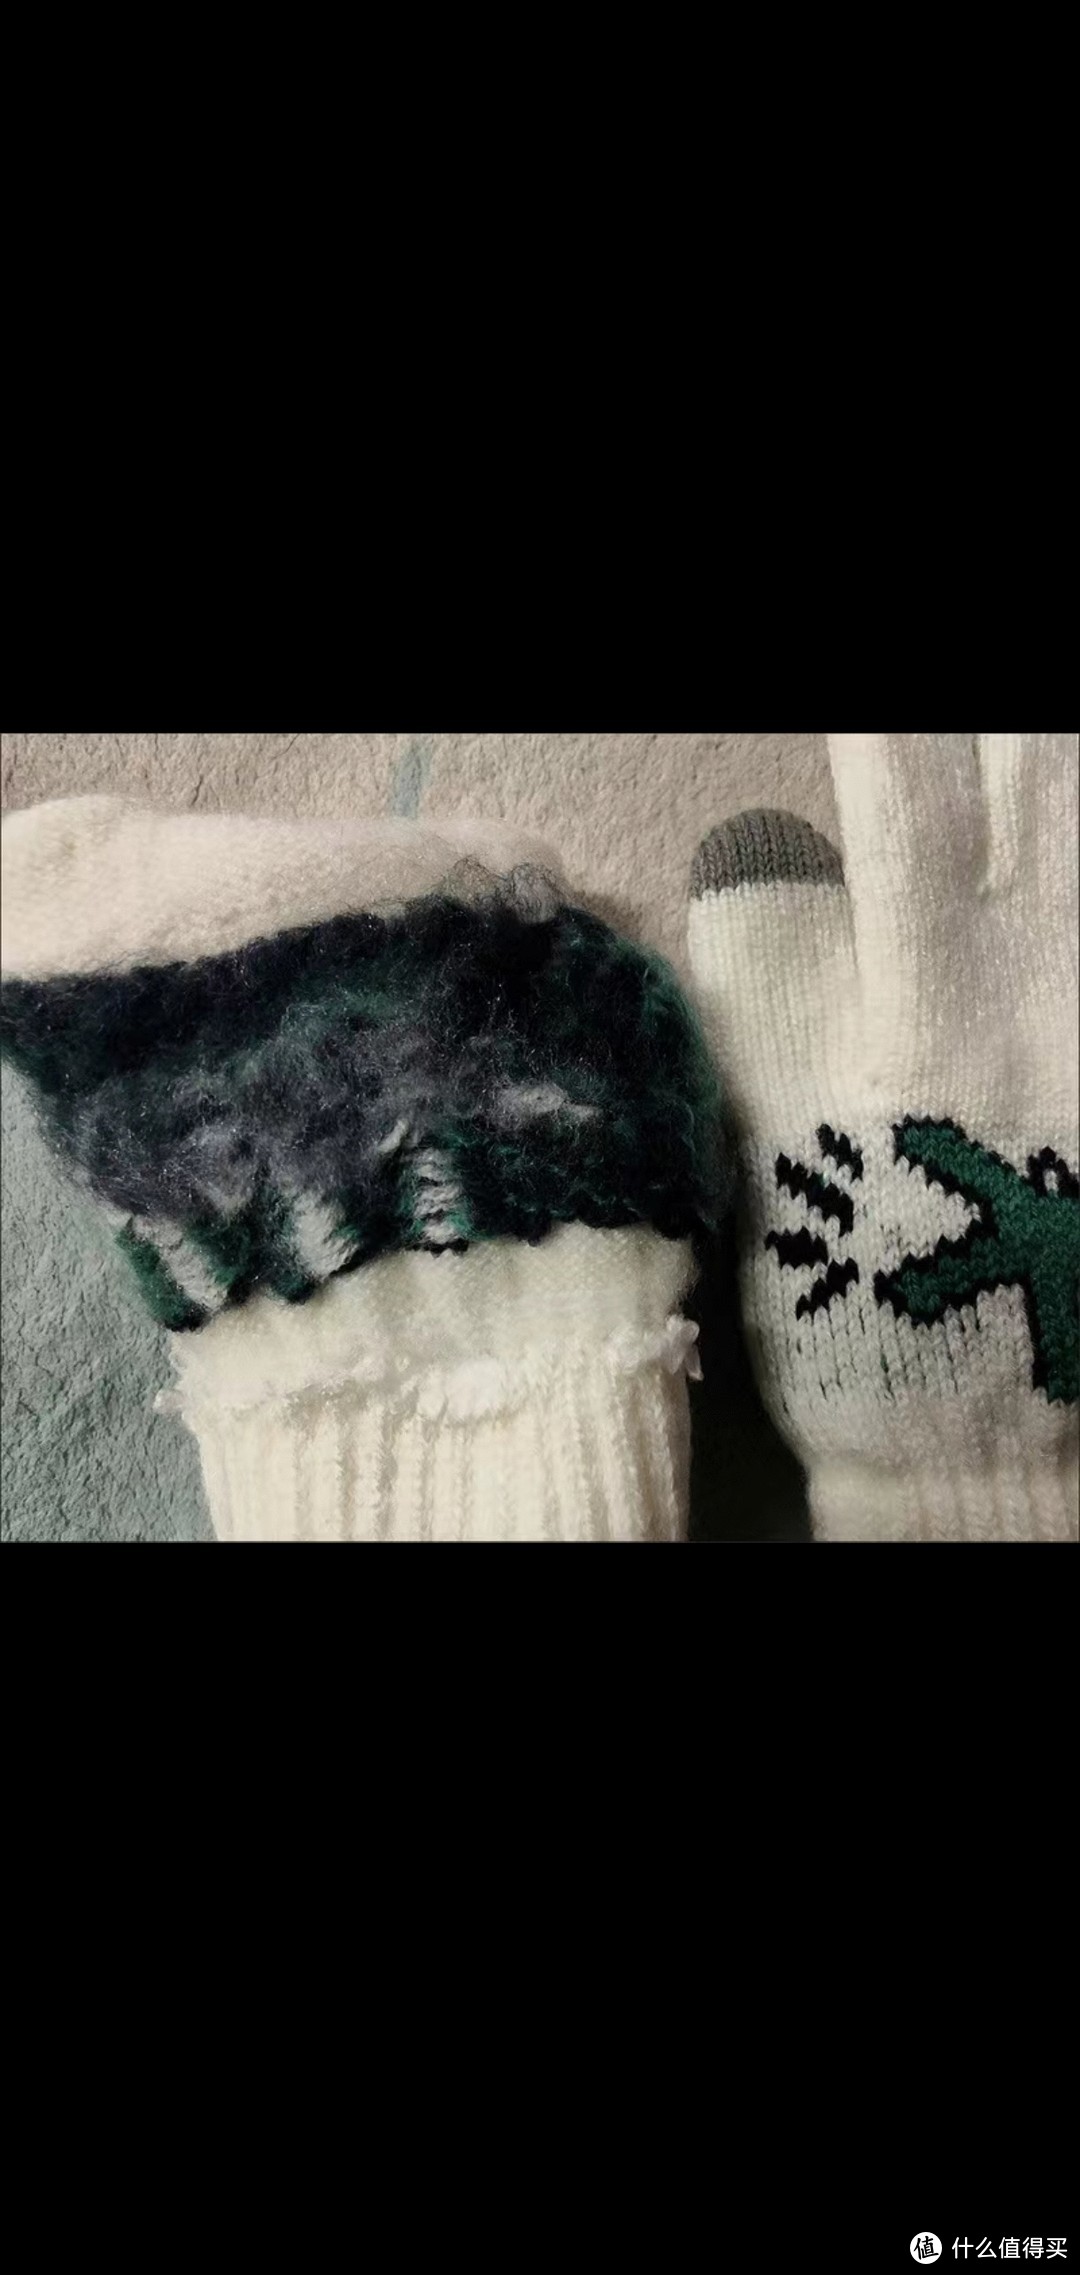 小恐龙图案毛线编织手套：保暖触屏设计与可爱造型